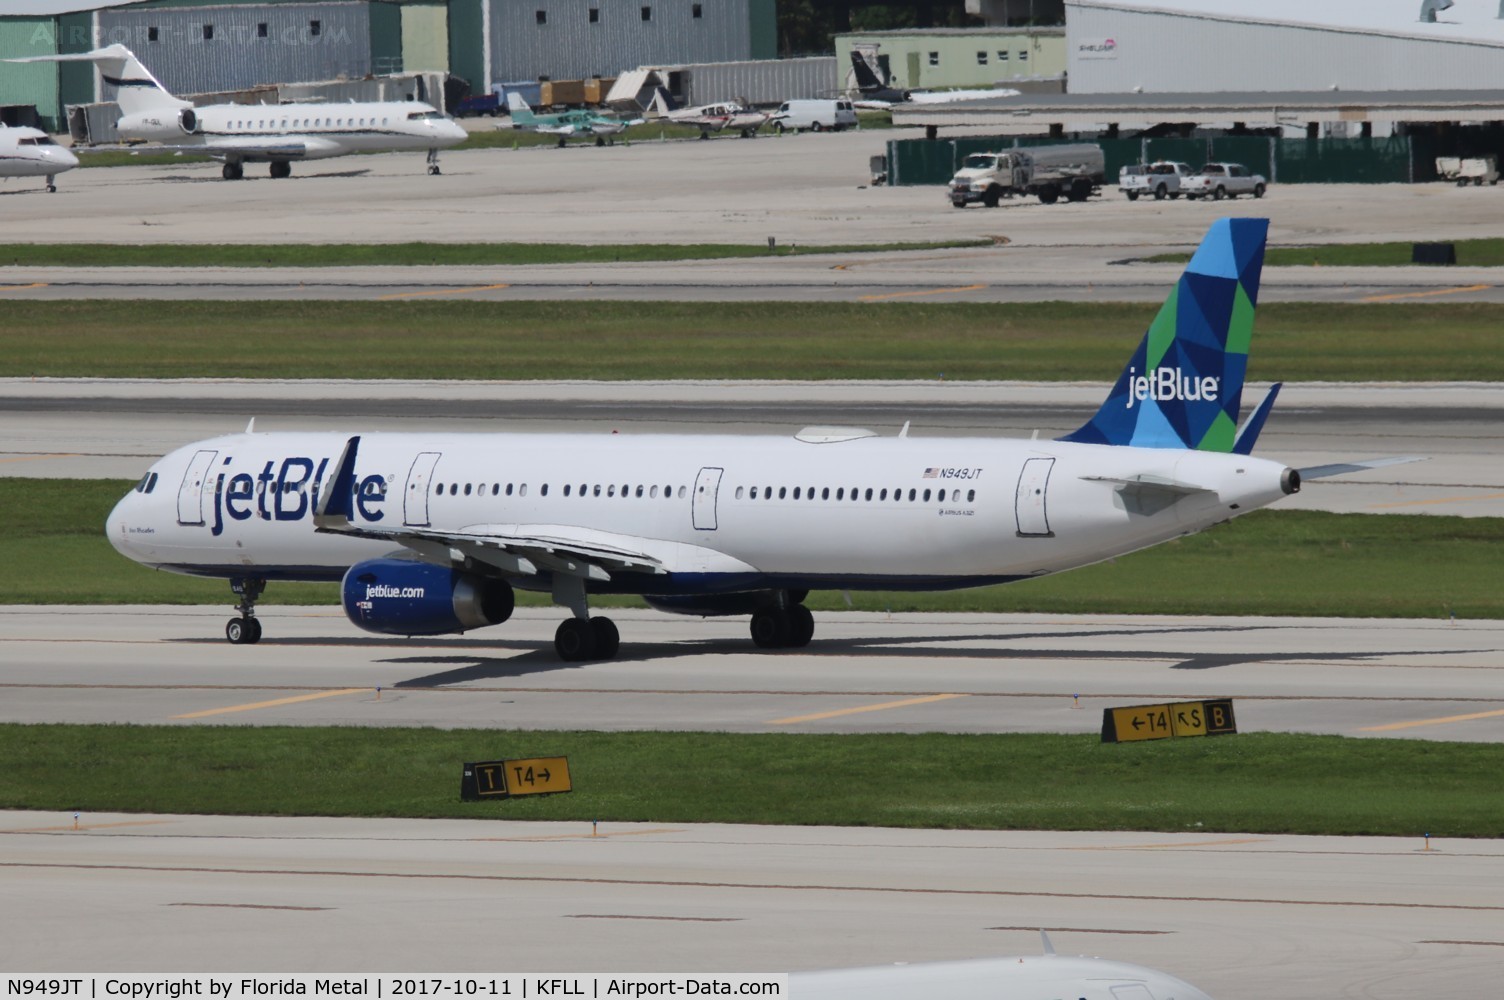 N949JT, 2015 Airbus A321-231 C/N 6575, JetBlue